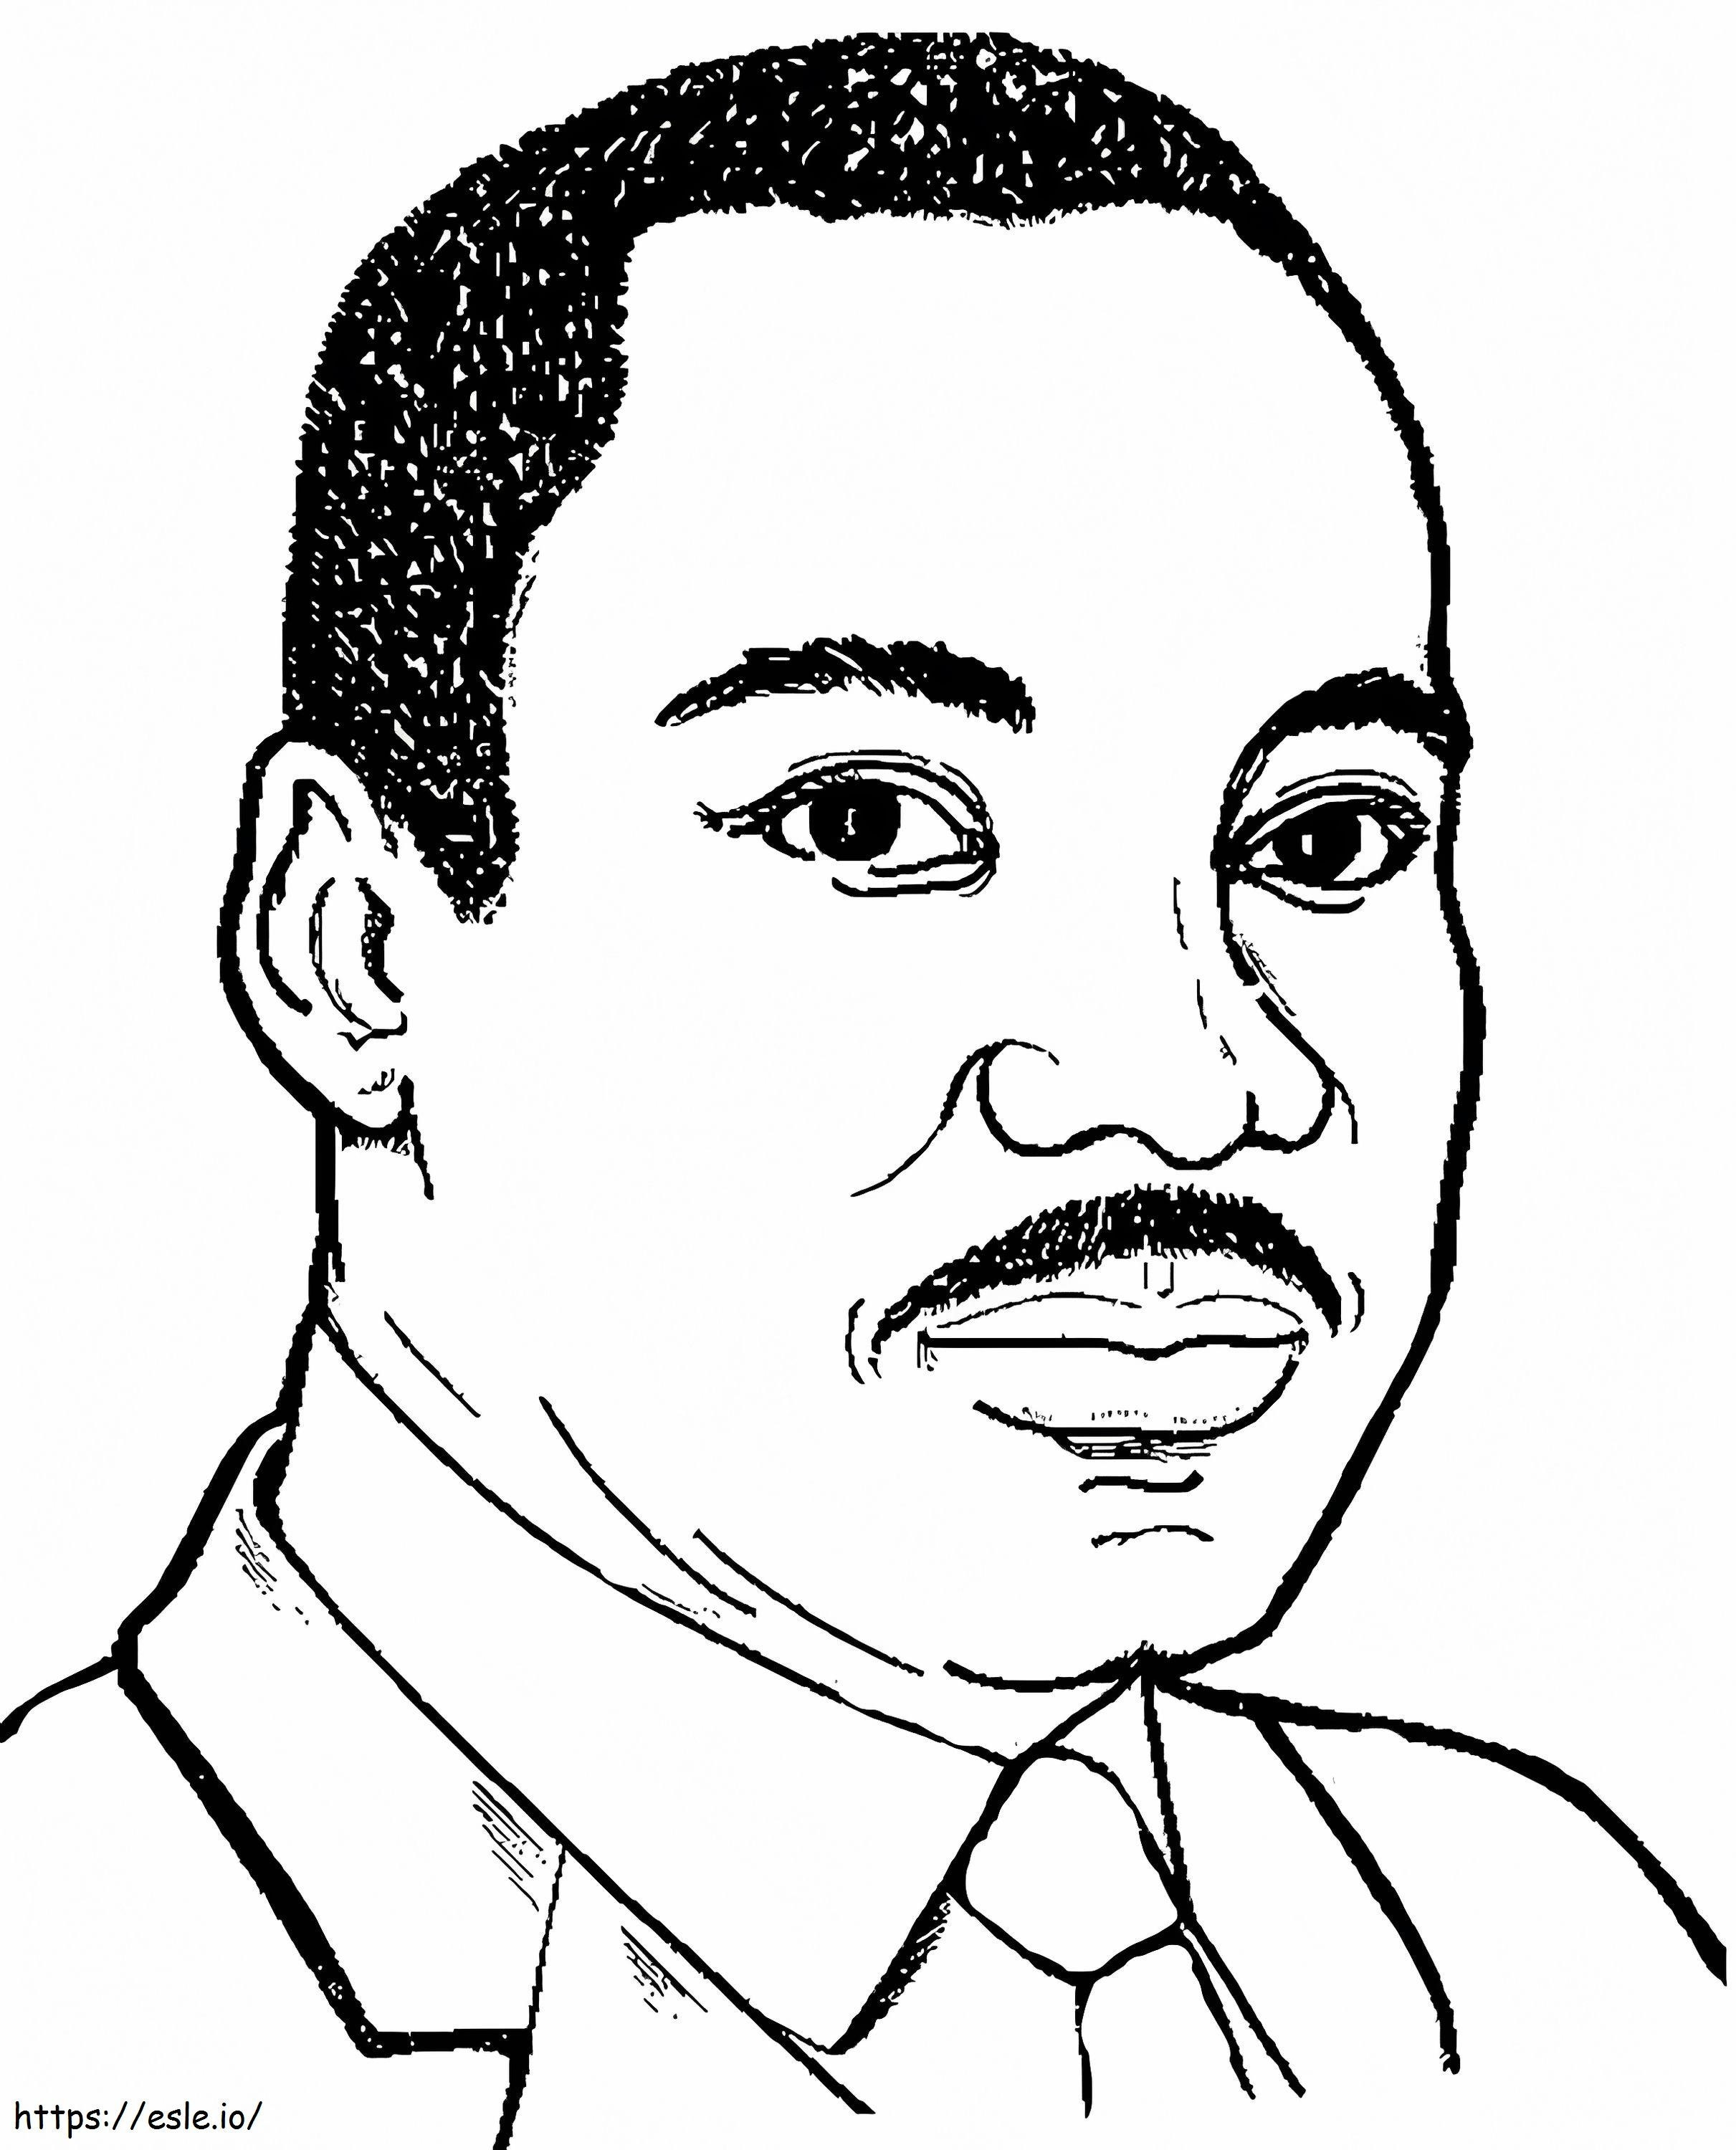 Martin Luther King Jr. 6 ausmalbilder